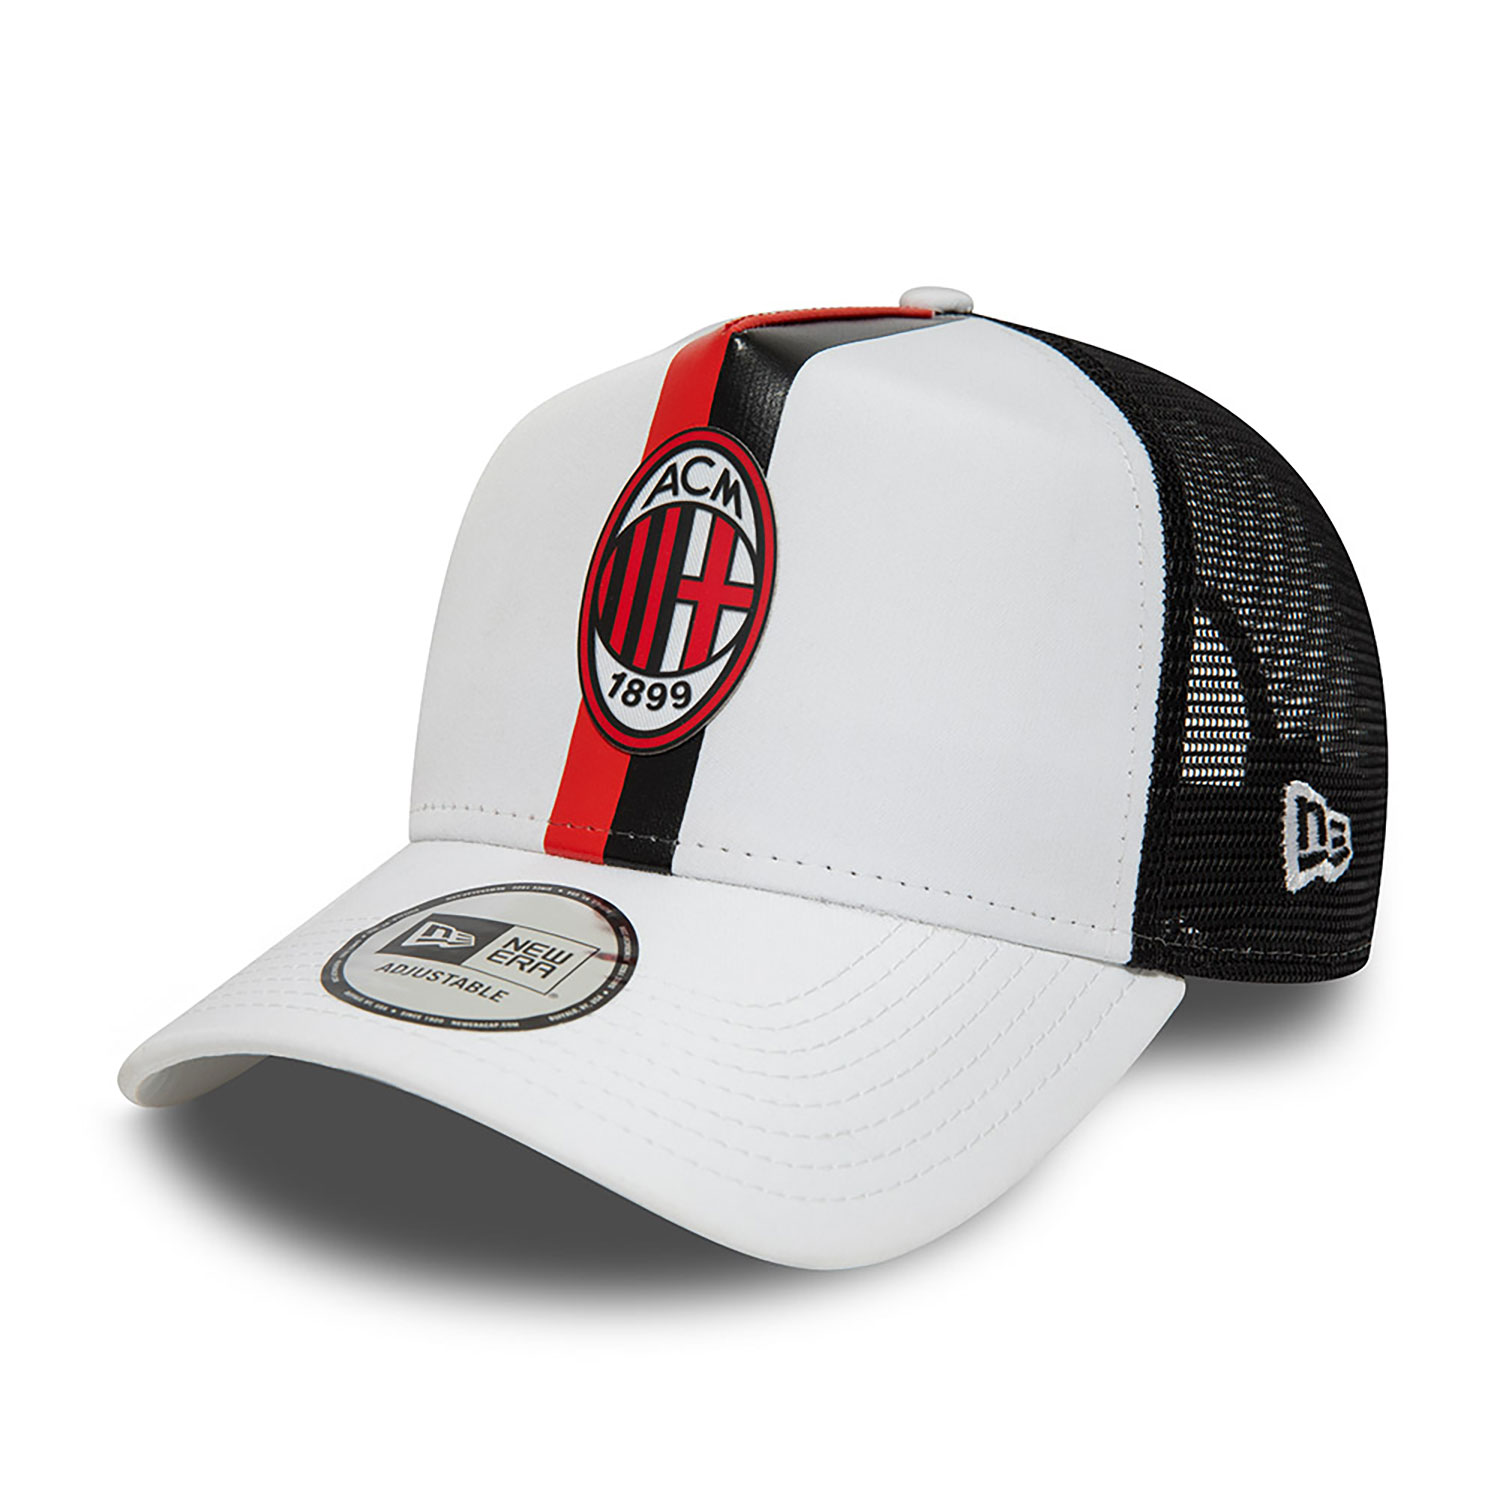 Voorlopige naam Verrast zijn voordeel New Era x AC Milan Trucker Cap With Logo D02_690 | New Era Cap CZ